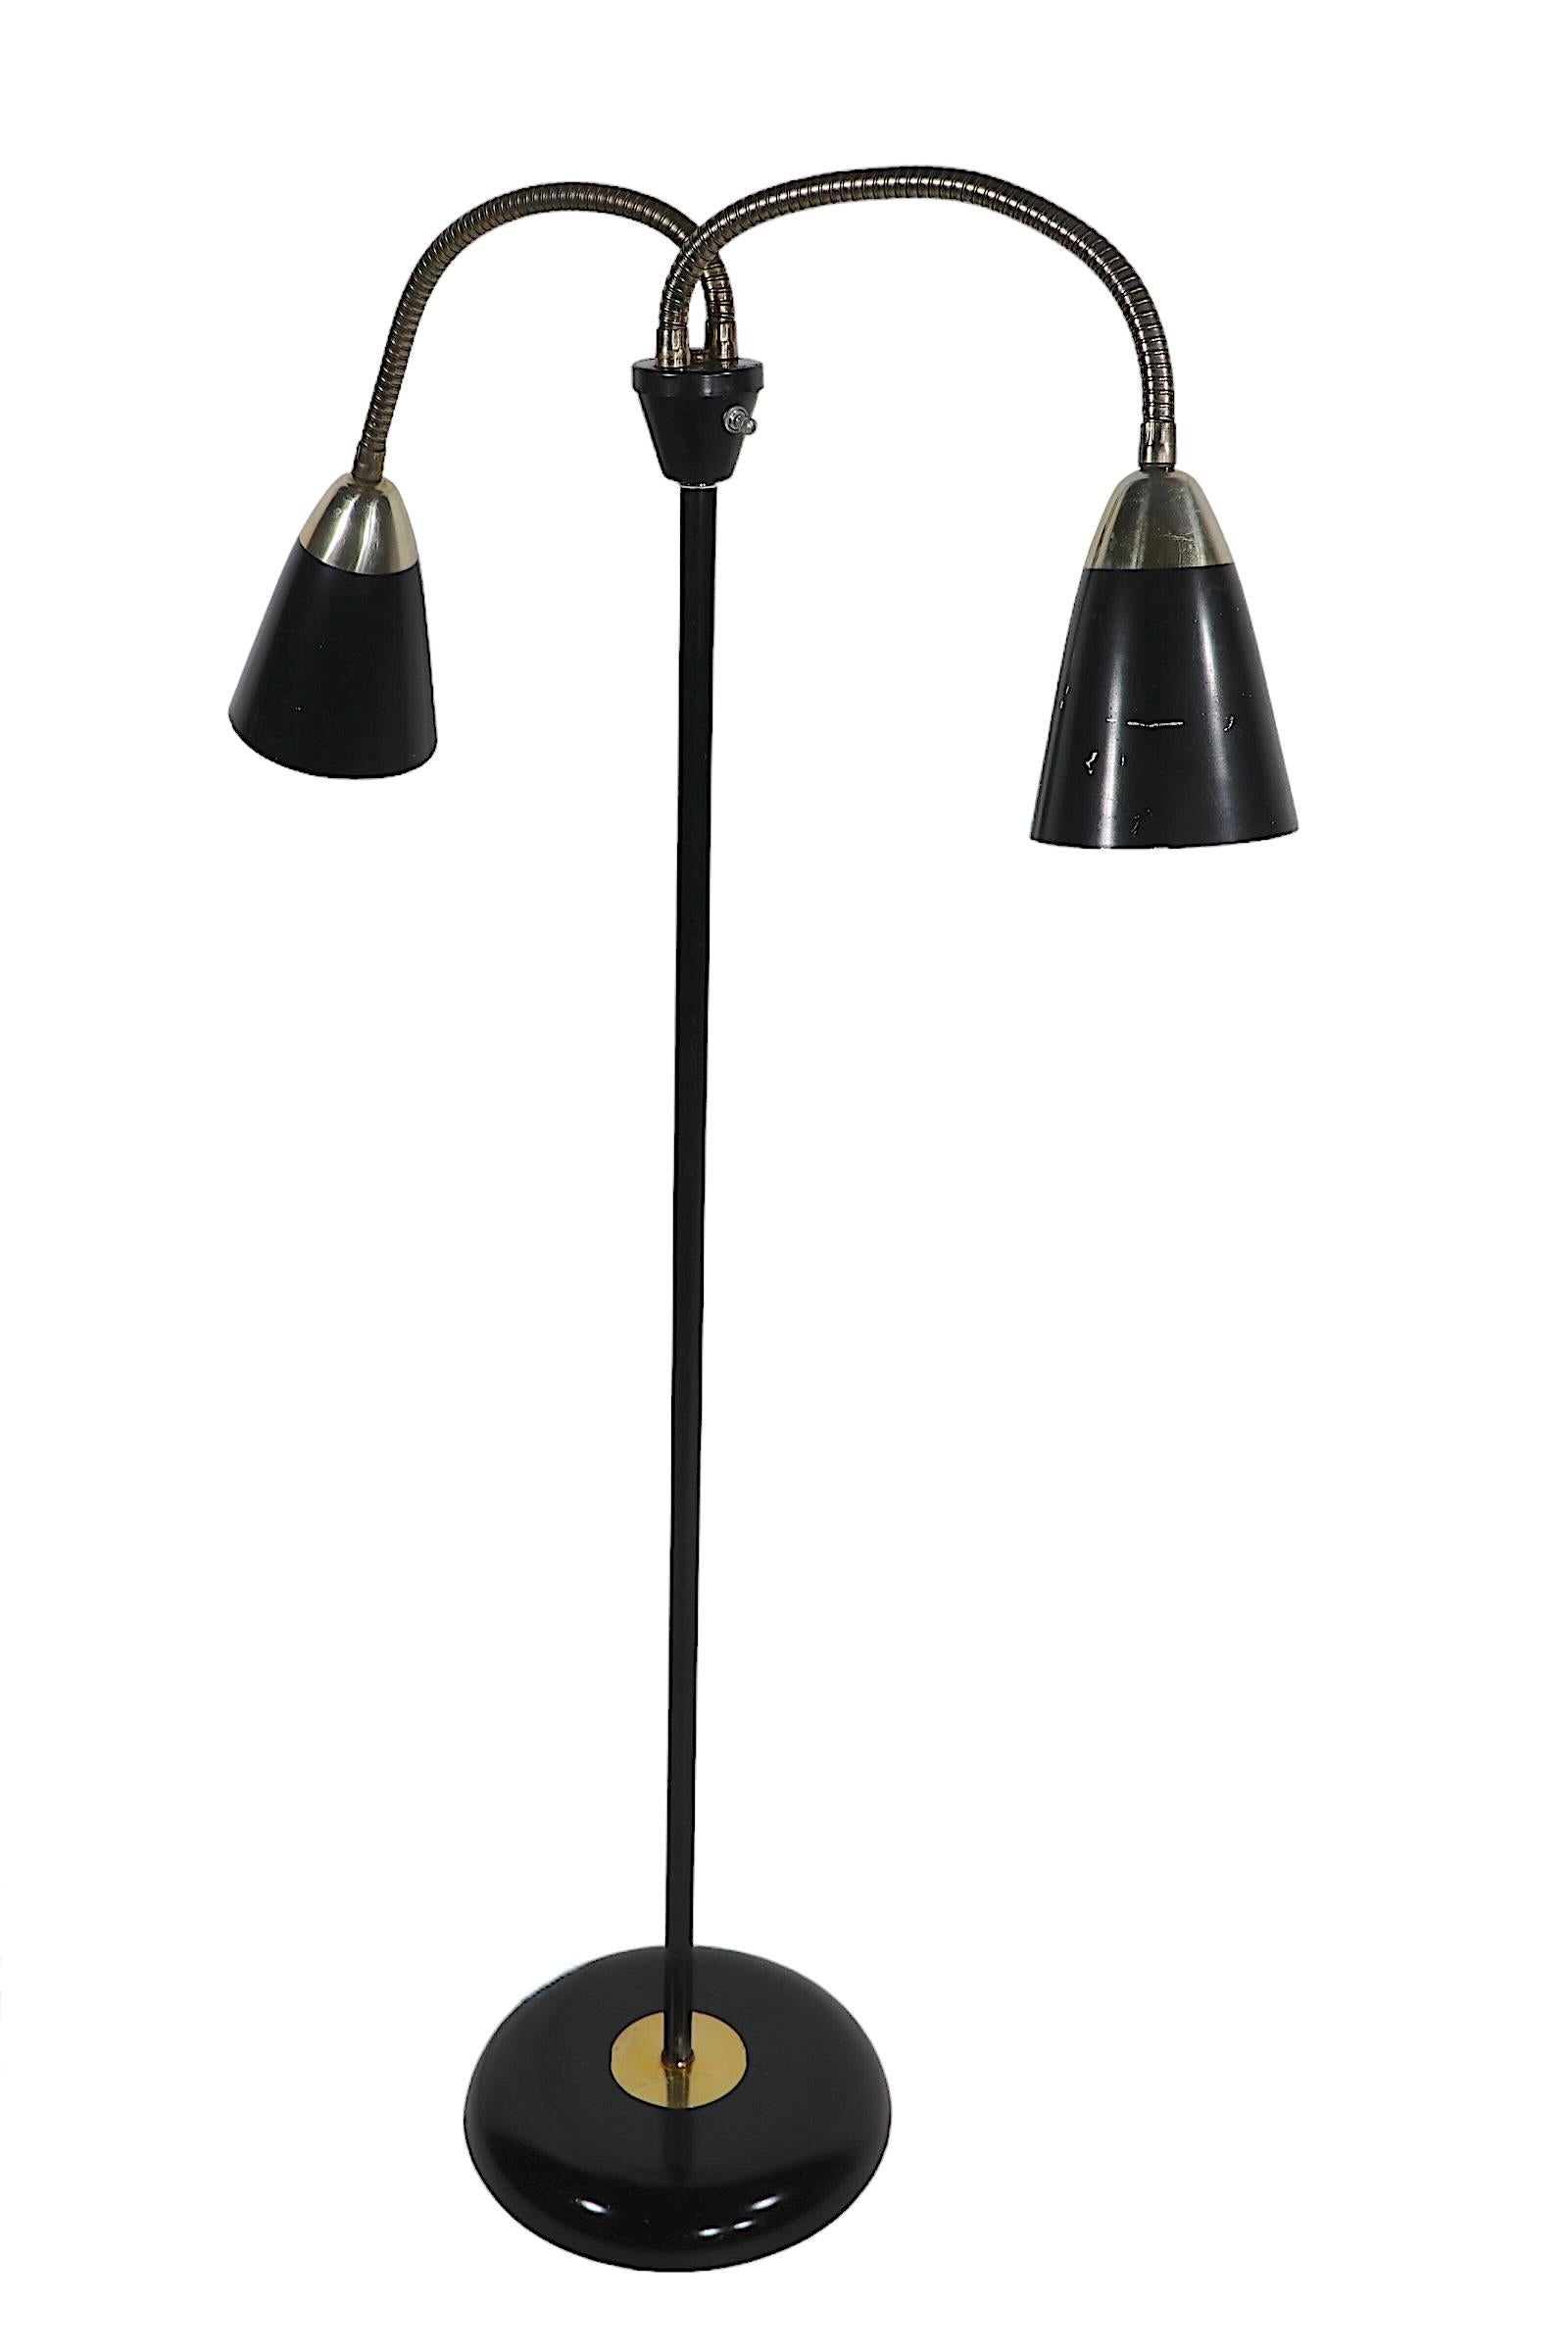 Mid Century Gooseneck Floor Lamp by Thurston for Lightolier  For Sale 6